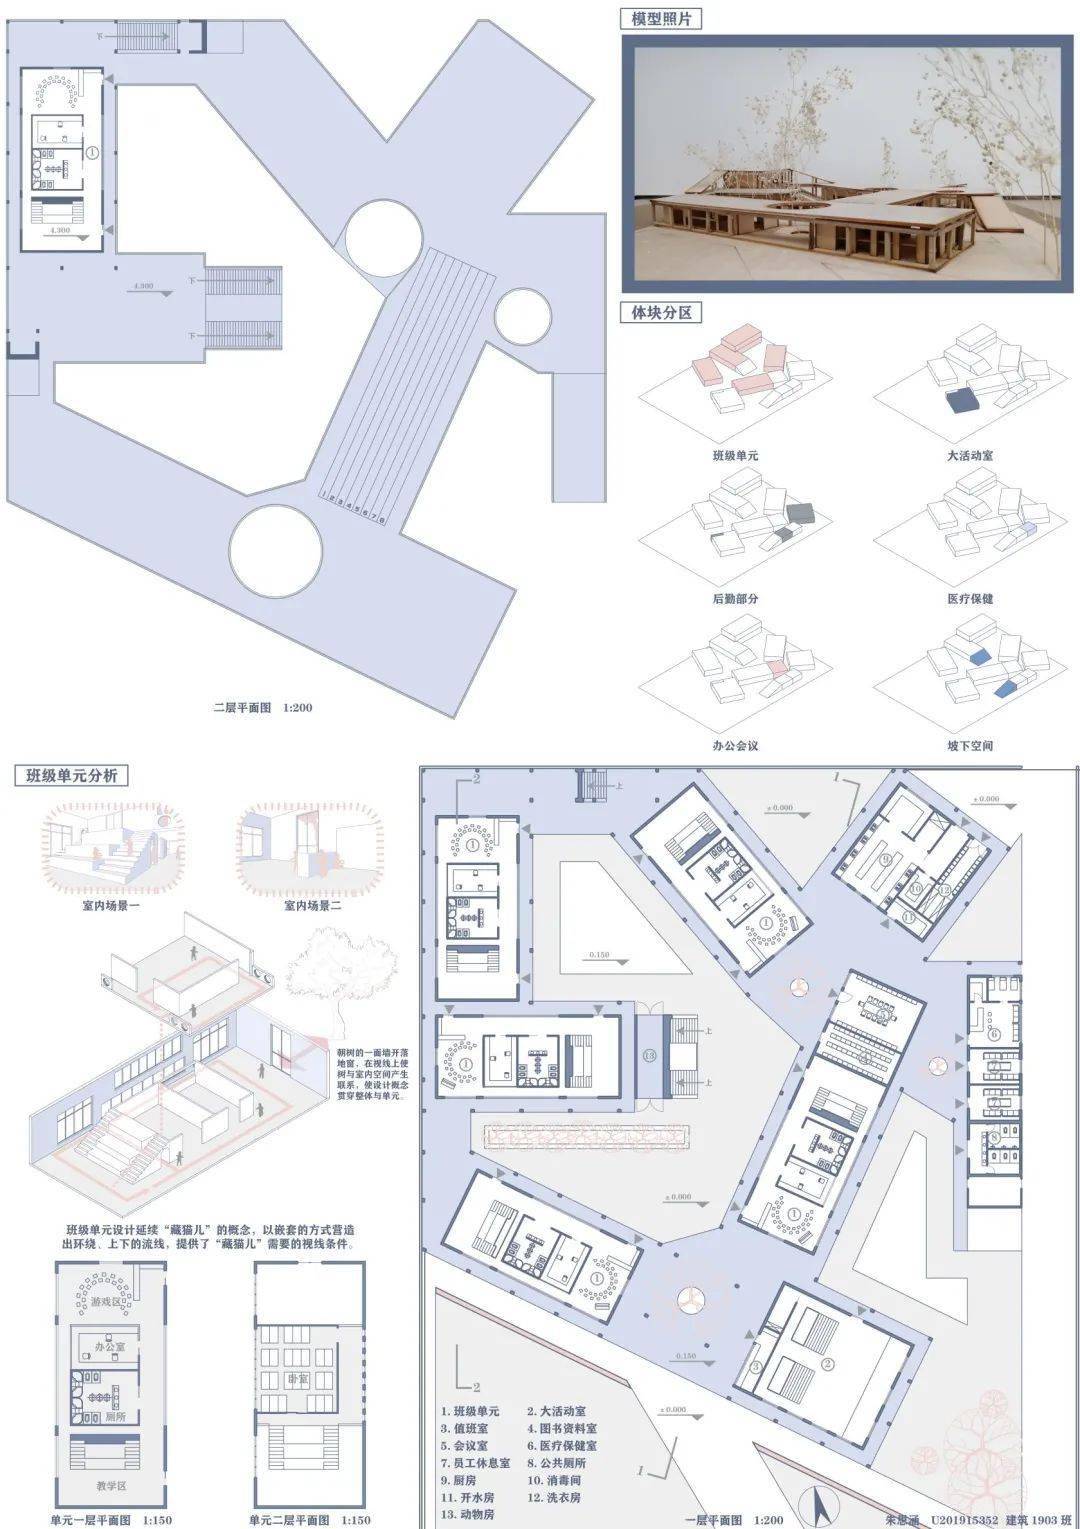 建规新闻 21年建筑学二年级 儿童之家 设计成果展示 空间